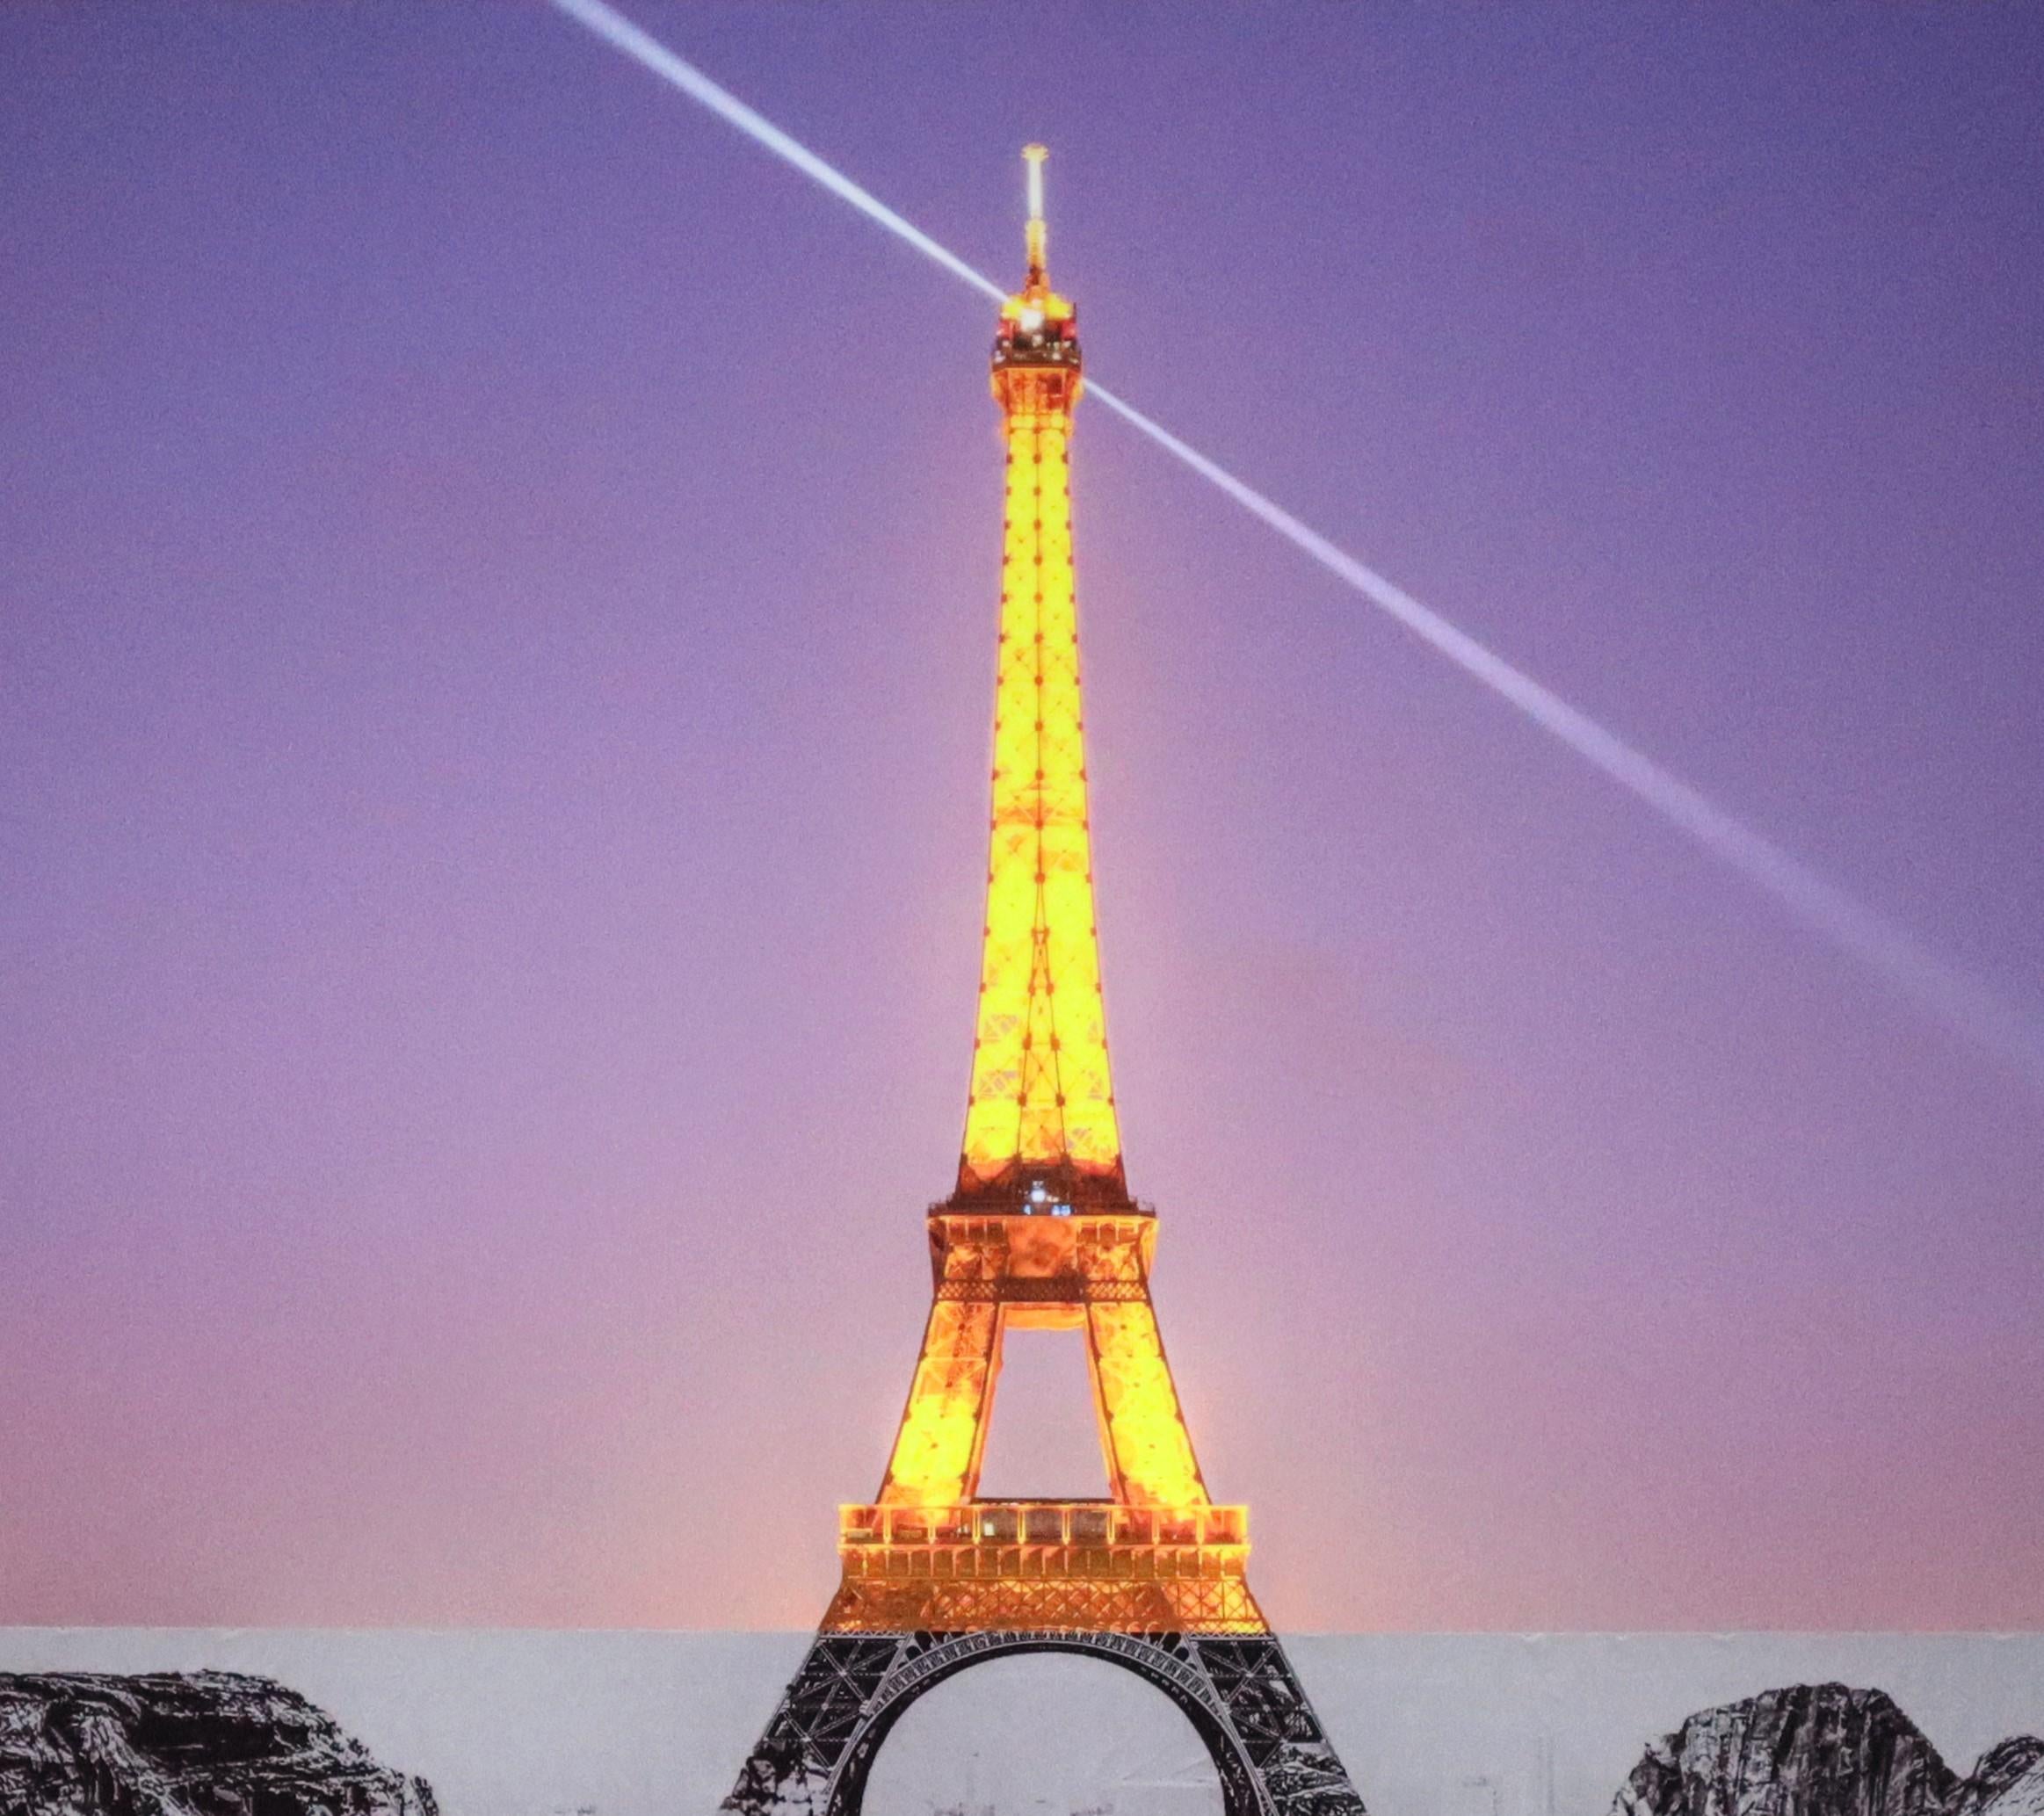 JR
Trompe l'oeil, Les Falaises du Trocadéro, 25 mai 2021, 22h18, Paris, France, 2021
2021
Impression giclée laminée avec G-gloss, montée sur Dibond 3mm
64 × 96 cm
(25.2 × 37.8 in)
En parfait état.
Edition de 472
Signé par JR dans le coin inférieur